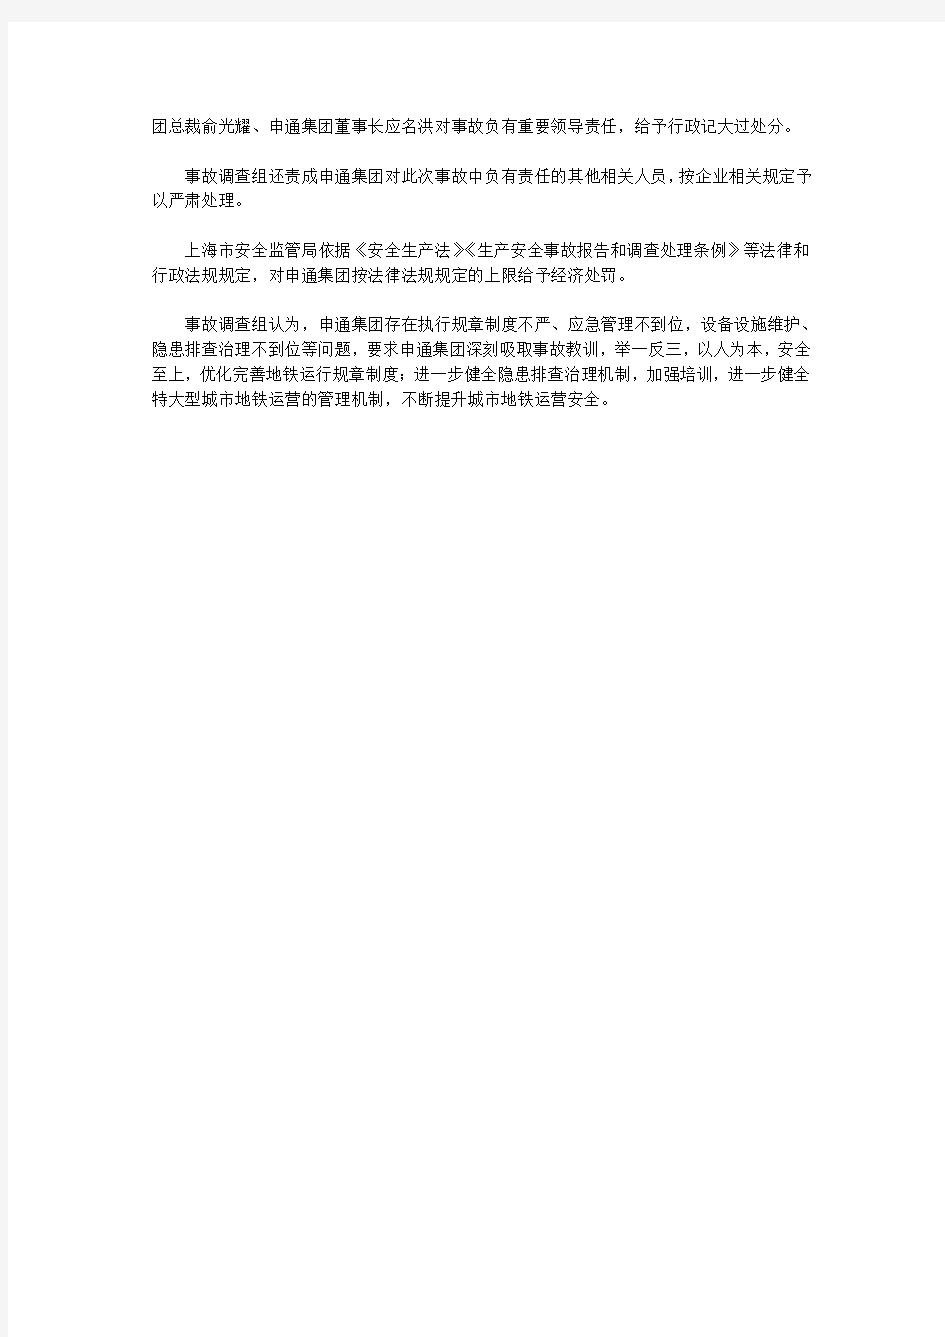 上海地铁事故调查报告